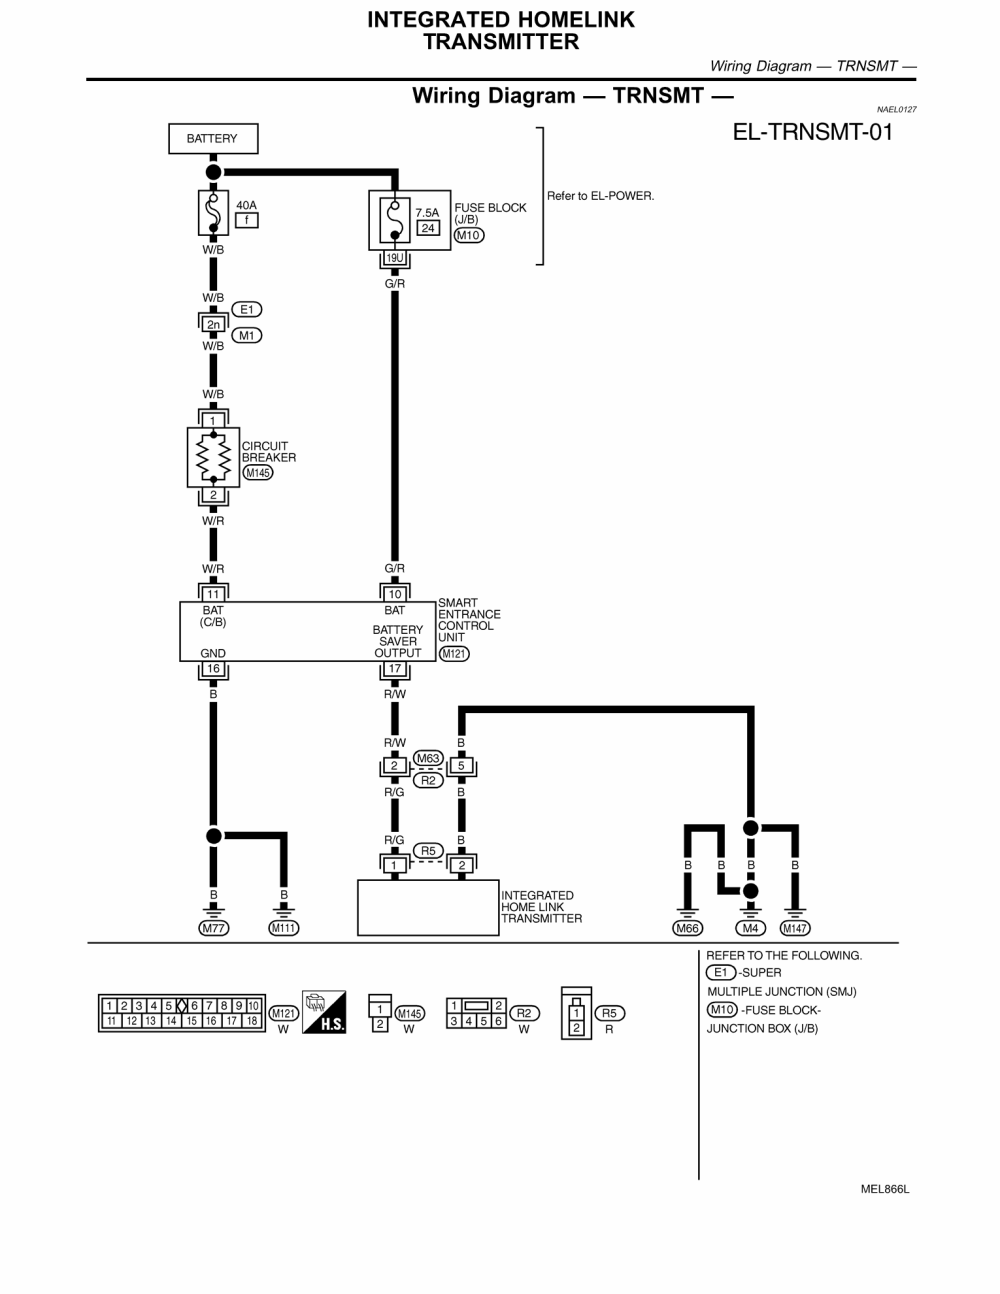 homelink wiring diagram